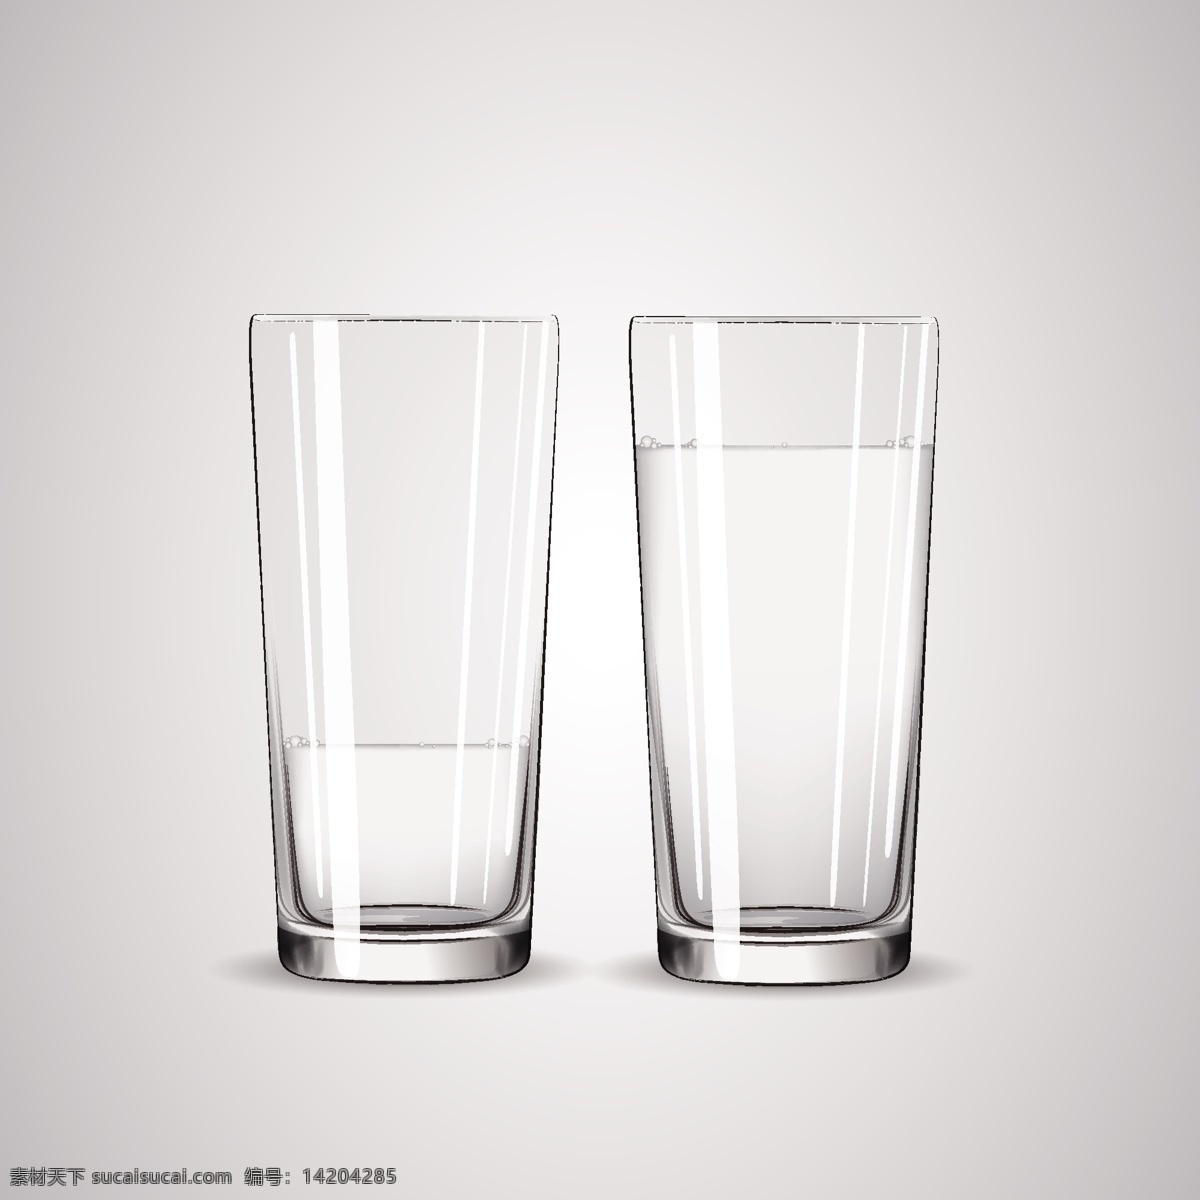 玻璃水杯 透明 玻璃杯 水杯 杯子 茶杯 酒杯 插画 背景 海报 画册 生活百科 生活用品 平面素材 白色